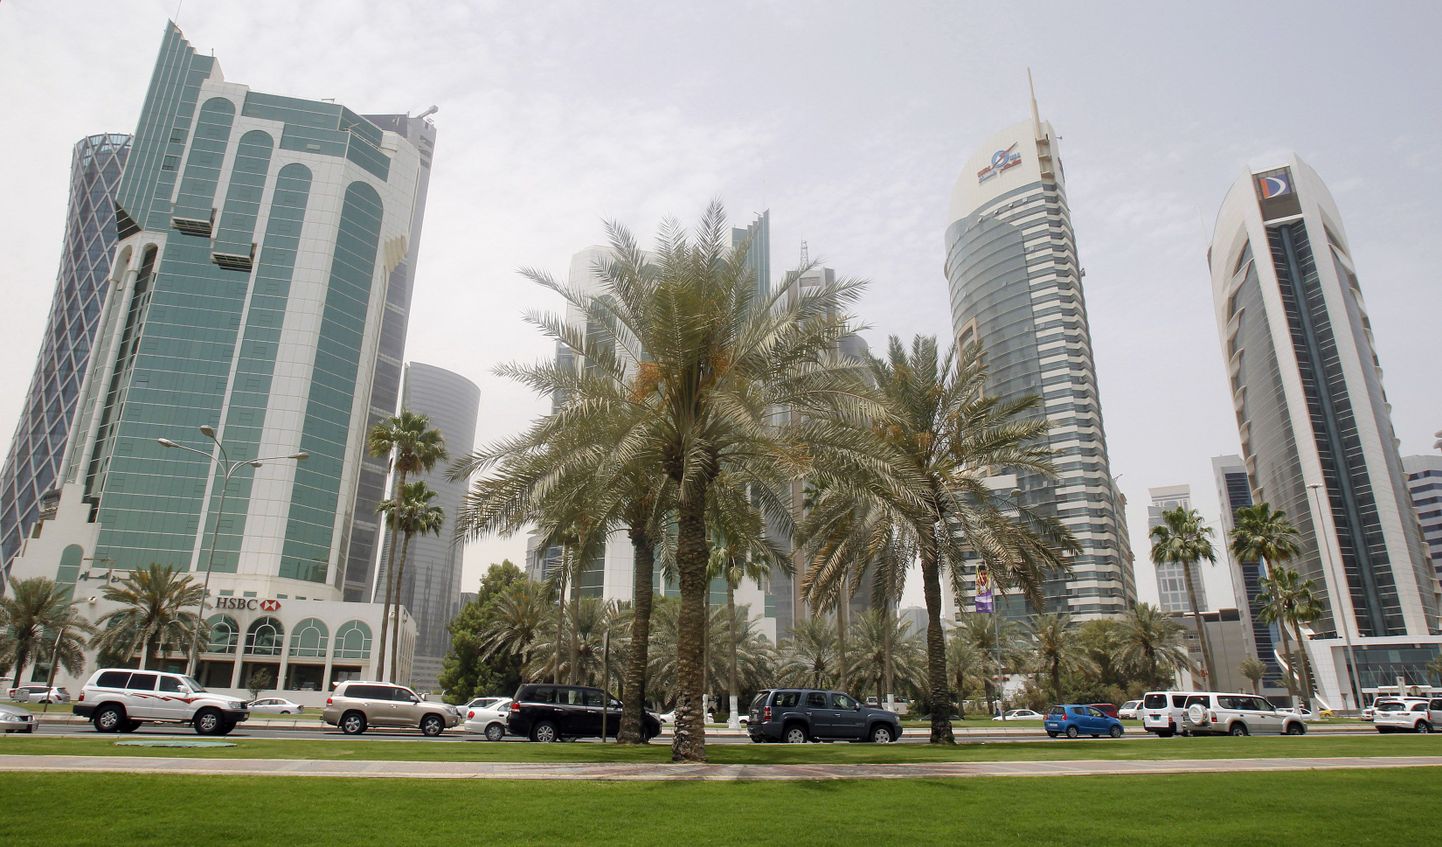 Katari pealinn Doha